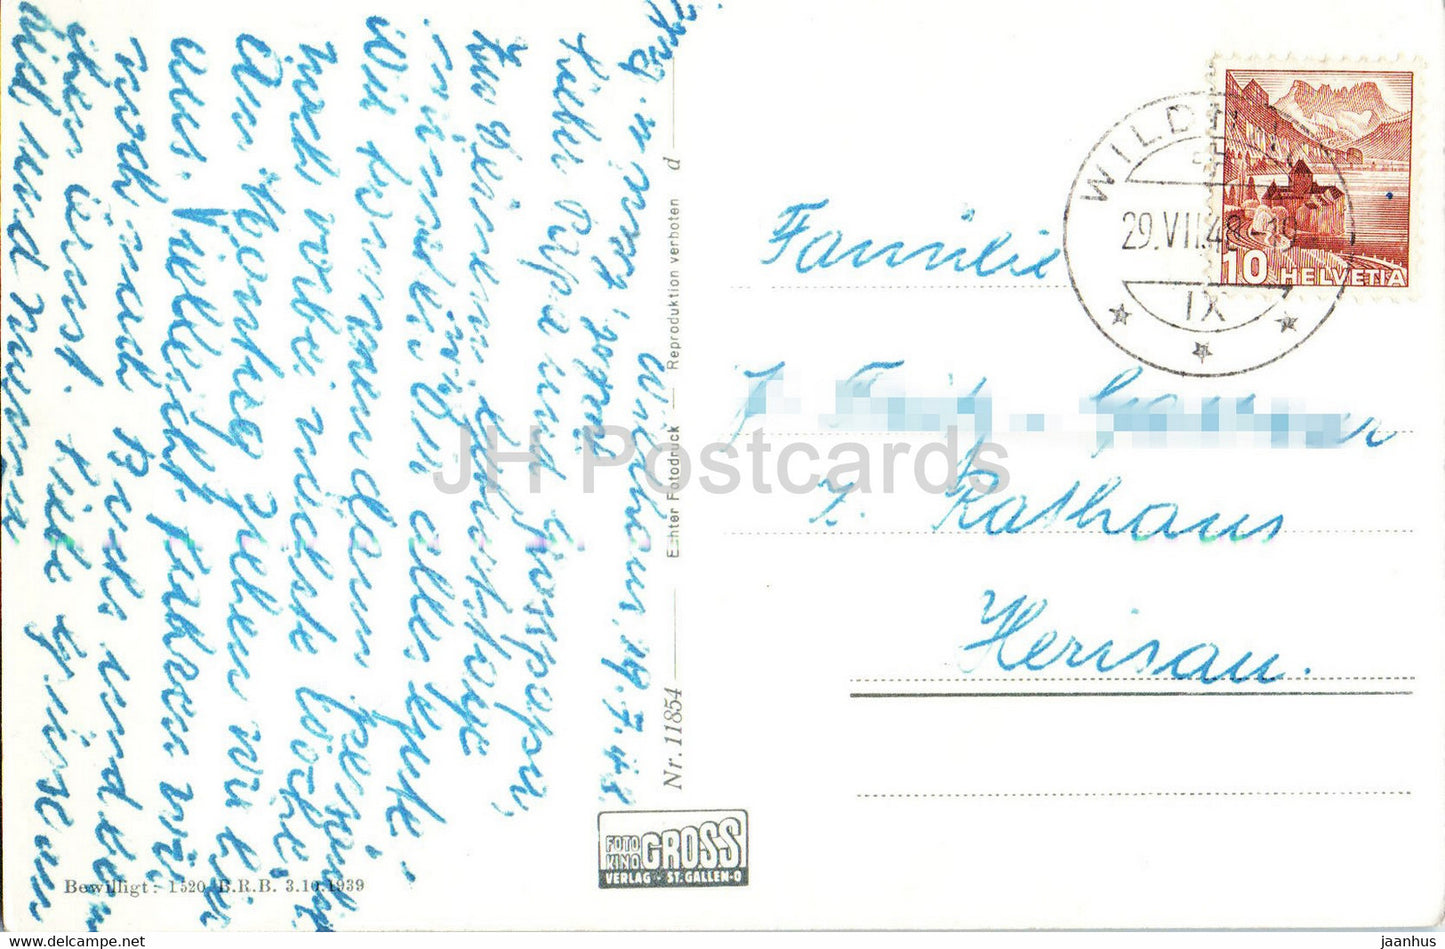 Santis mit Schafberg vom Aelpli Togg aus Abendstimmung - 11854 - 1948 - carte postale ancienne - Suisse - utilisé